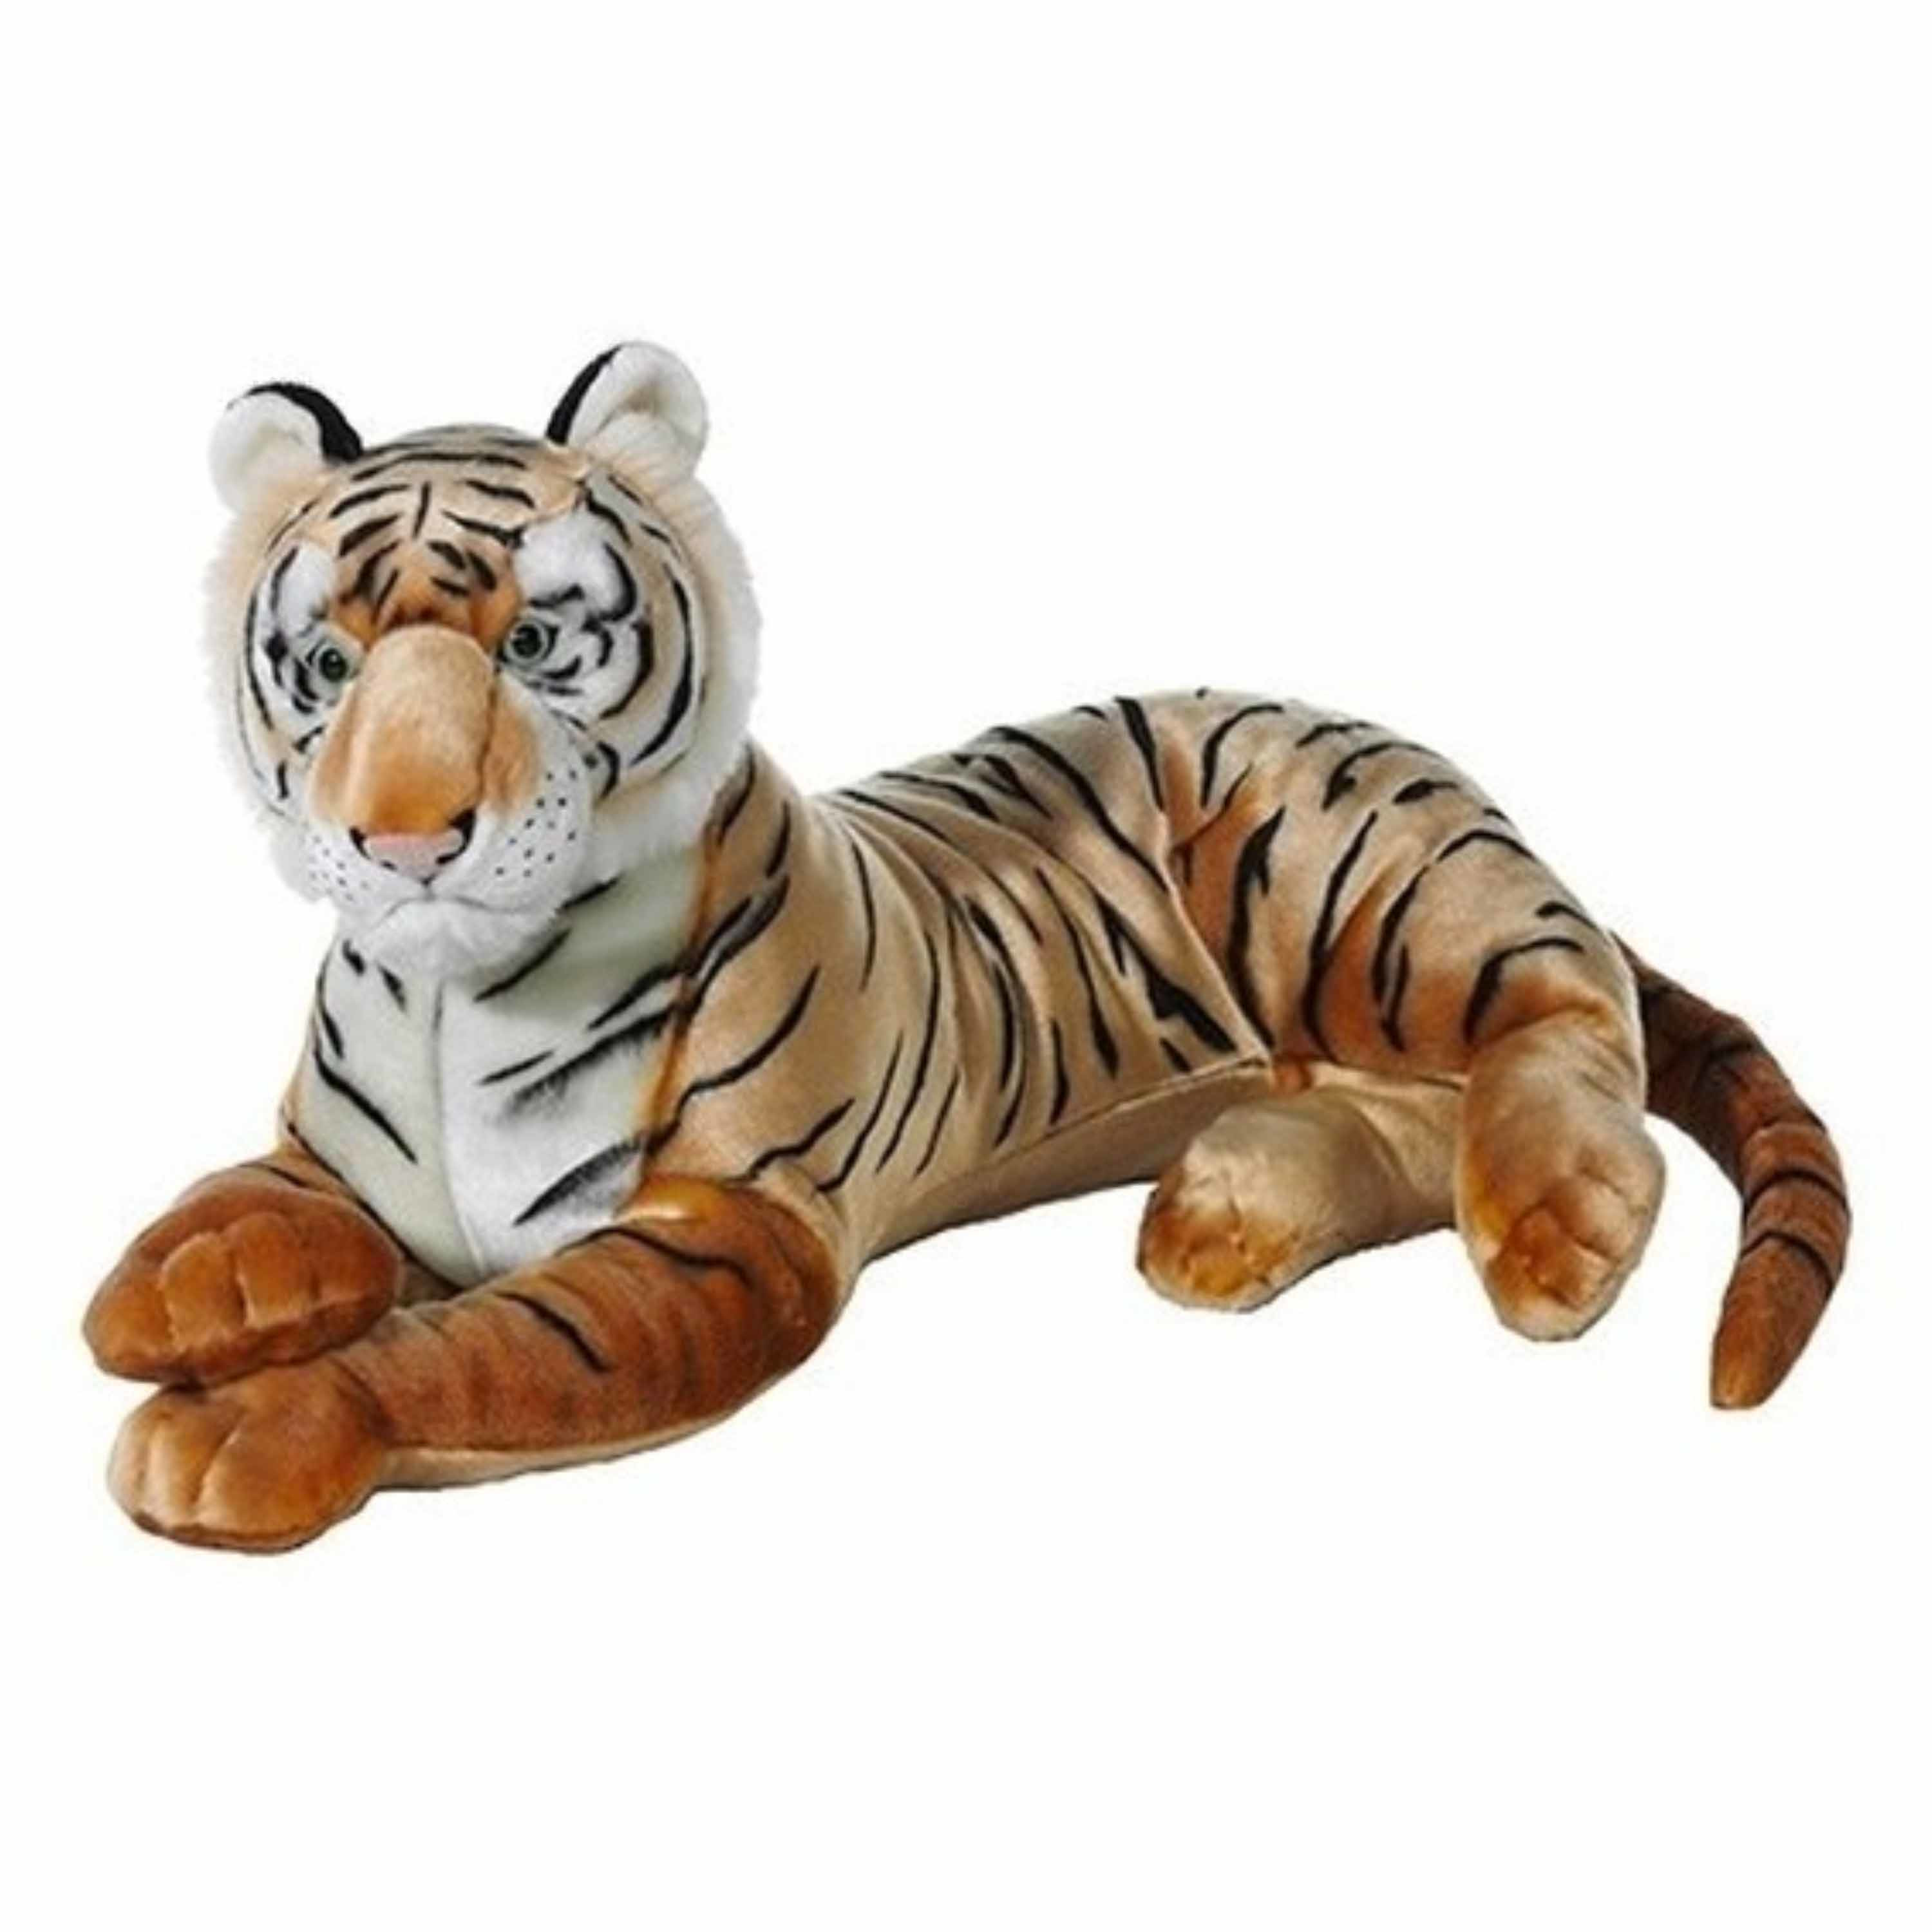 Rusteloos Detecteerbaar risico Grote bruine pluche tijger knuffel van 70 cm bestellen voor € 119.95 bij  het Knuffelparadijs